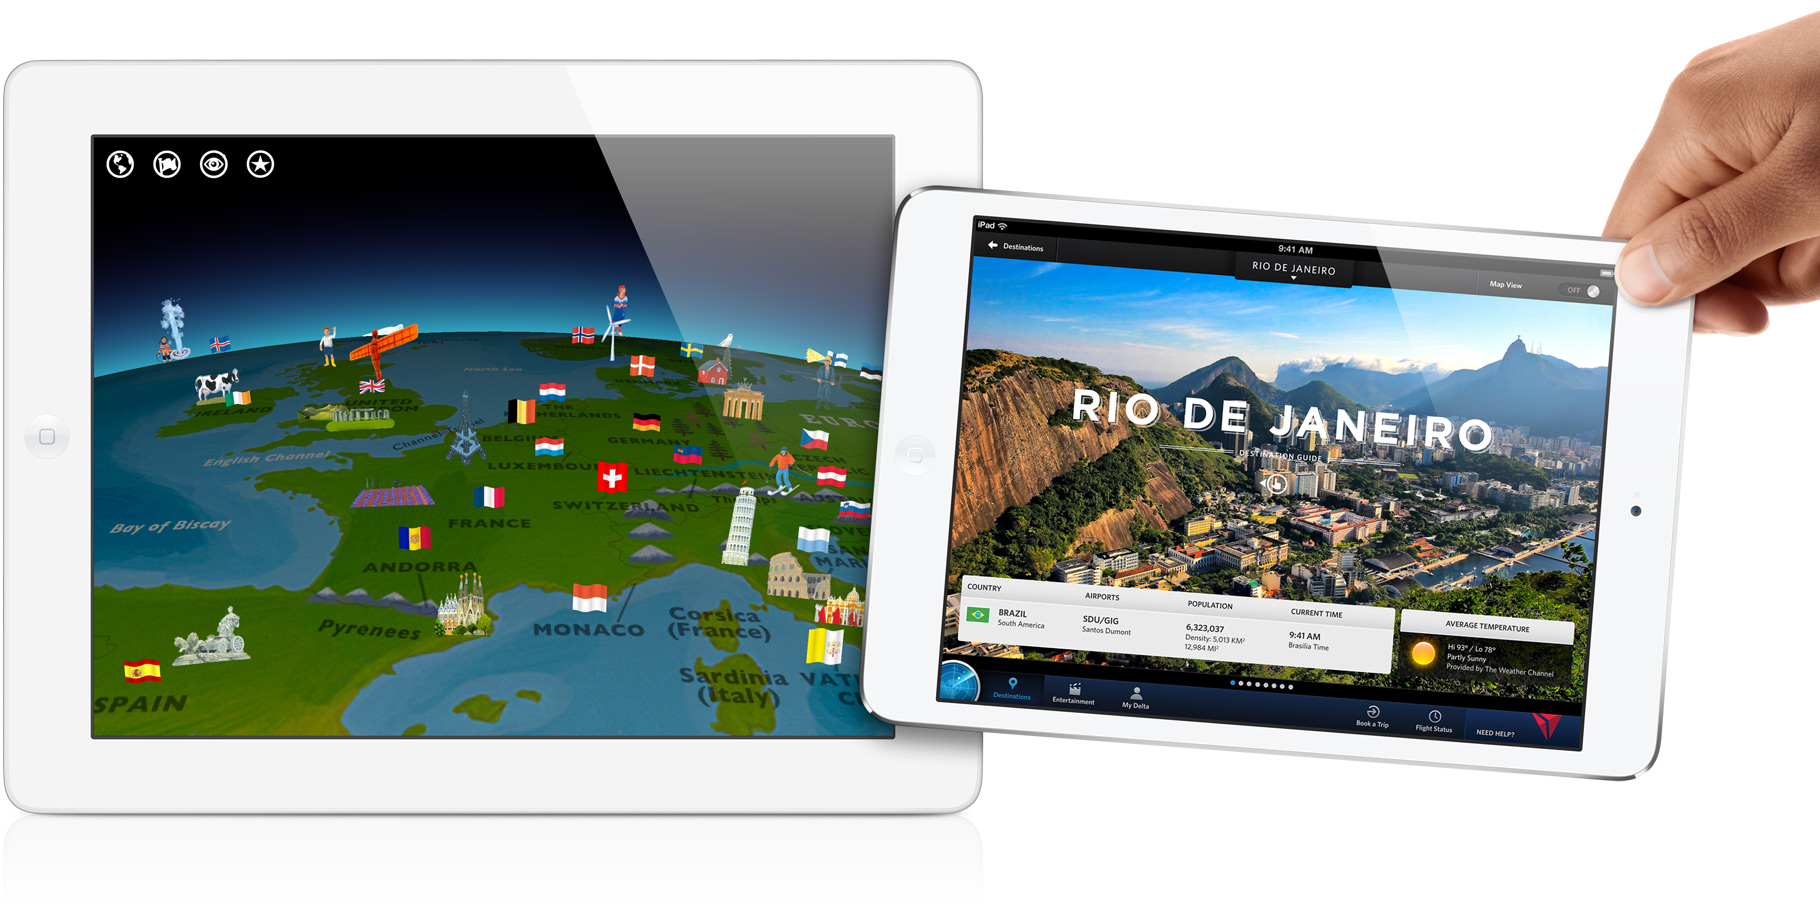 iPad divulgando o Rio de Janeiro